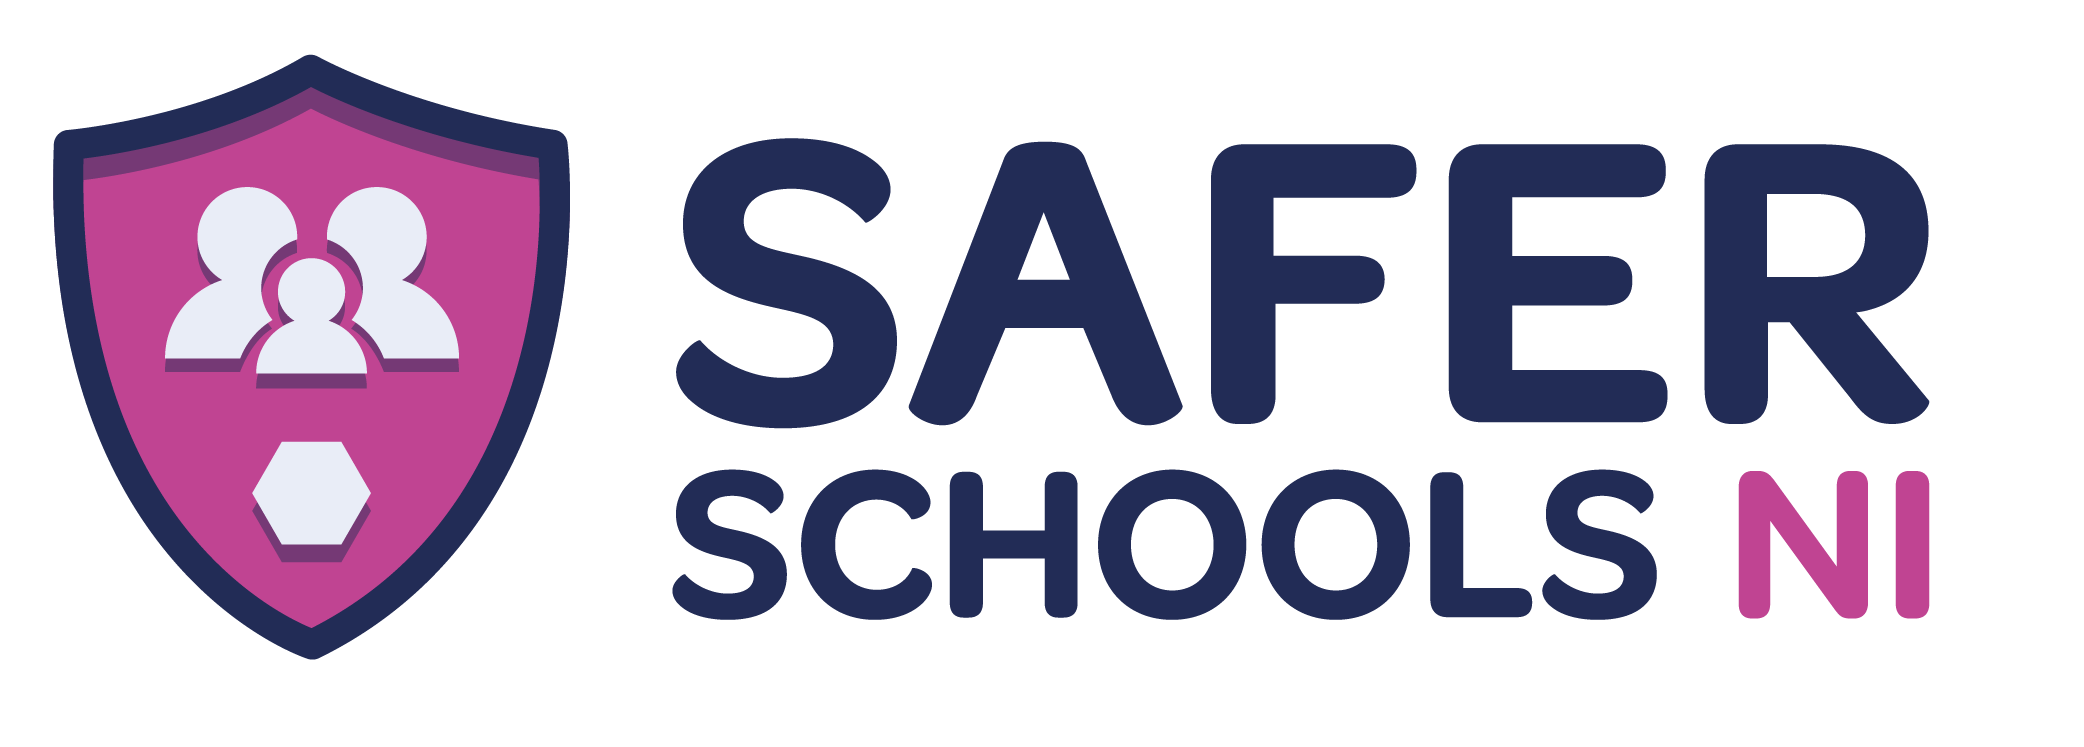 Safer Schools logo colour